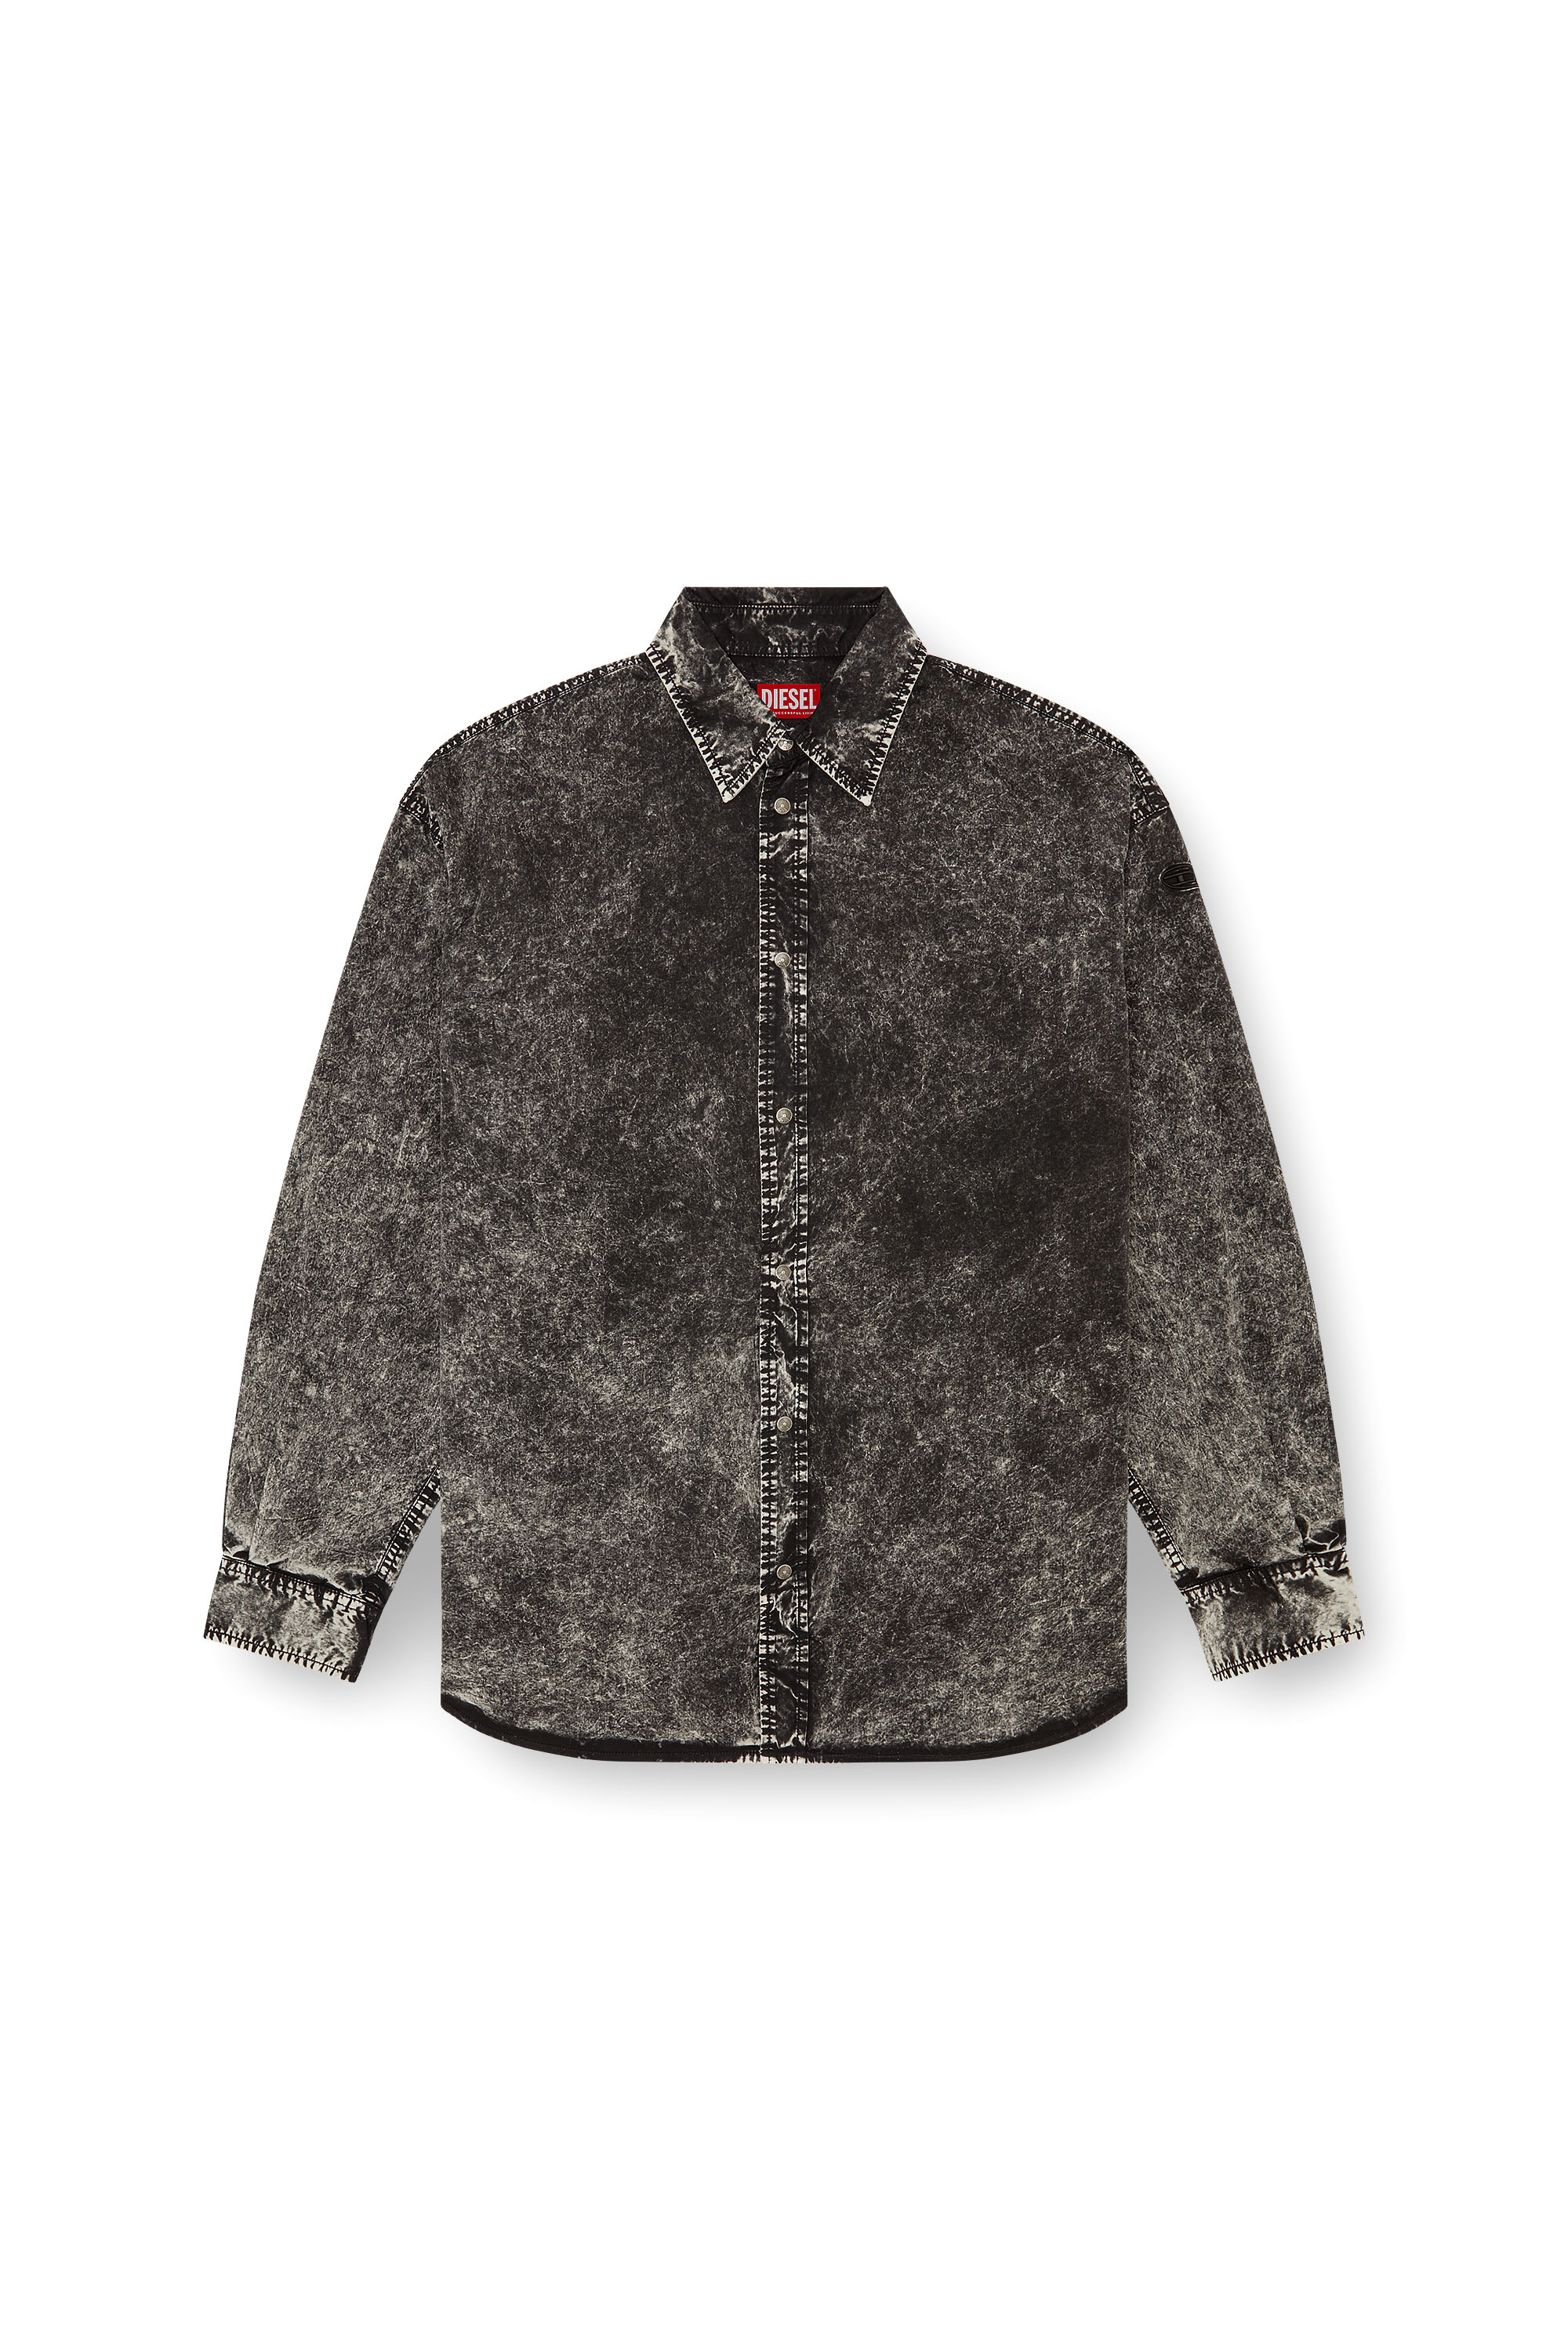 Diesel - S-VEKEN, Male Shirt in marbled cotton in ブラック - Image 3